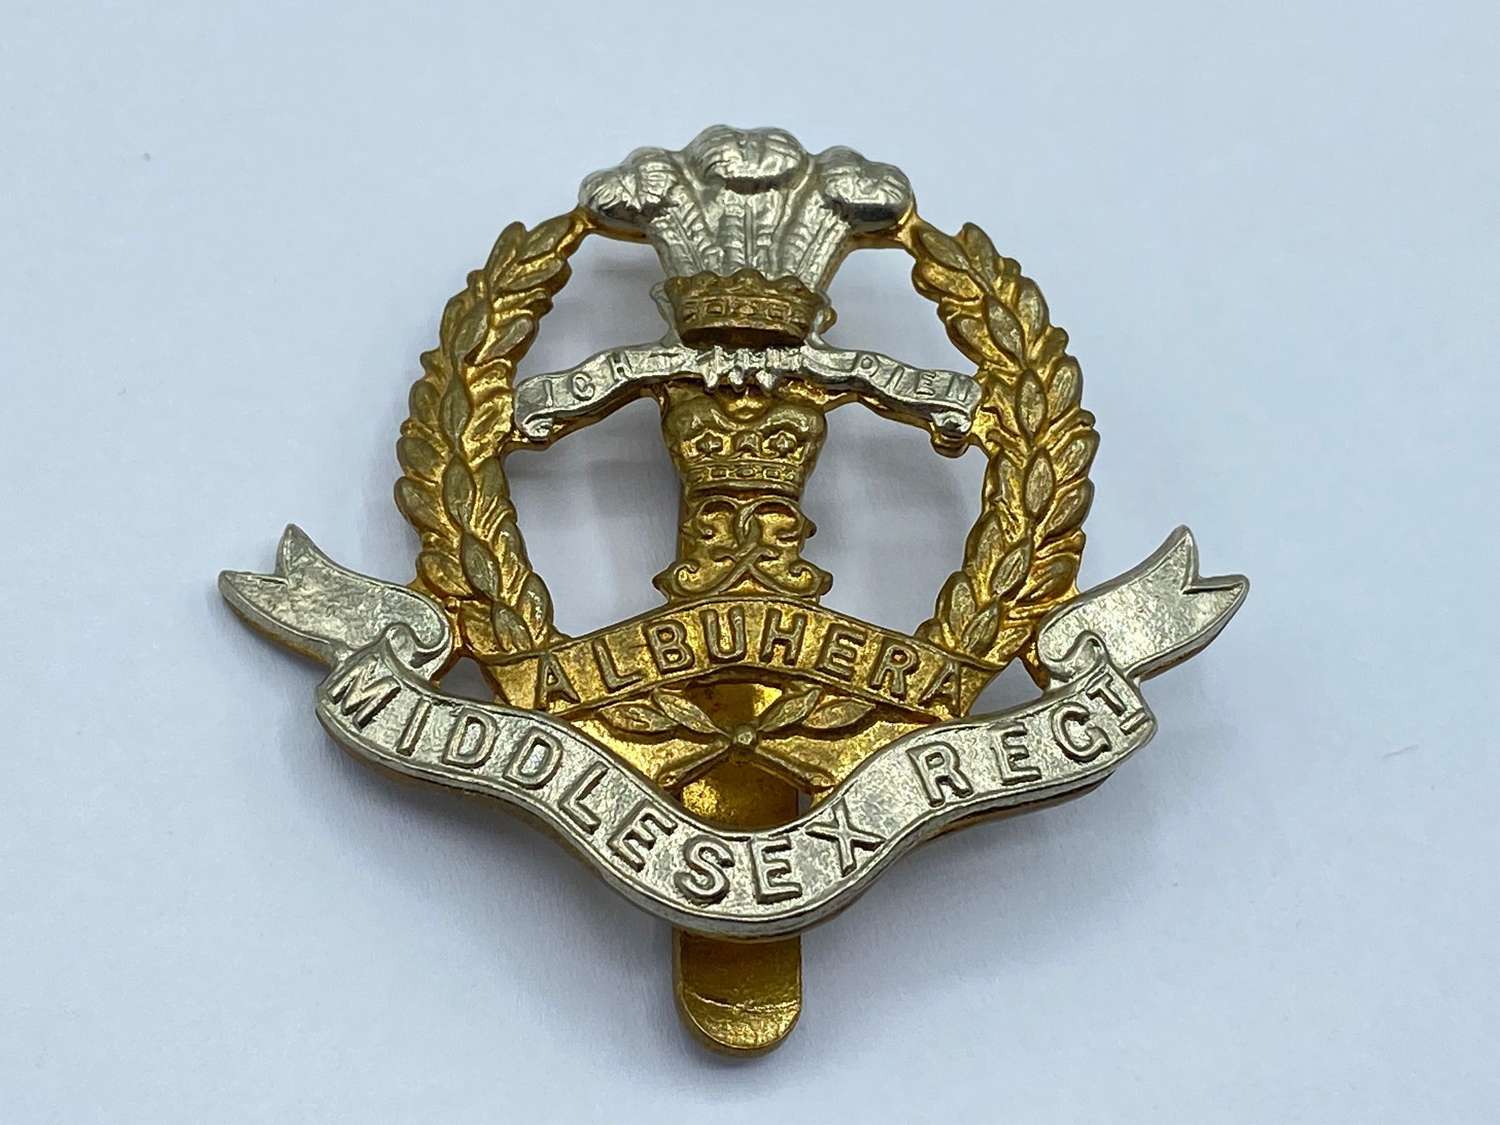 WW2 Period British Army Middlesex Regiment Slider Cap Badge